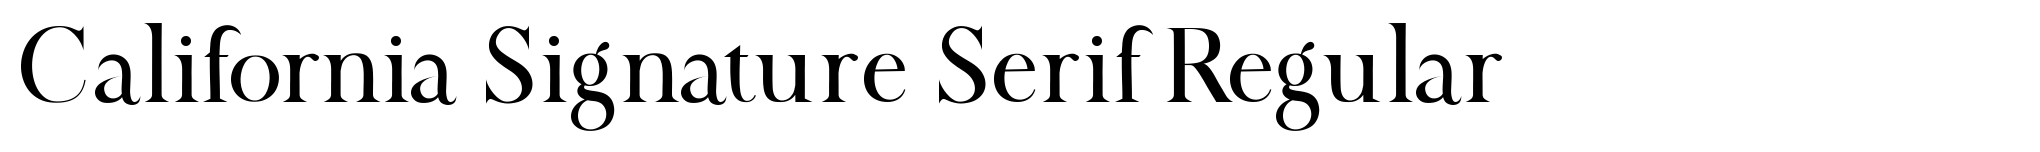 California Signature Serif Regular image